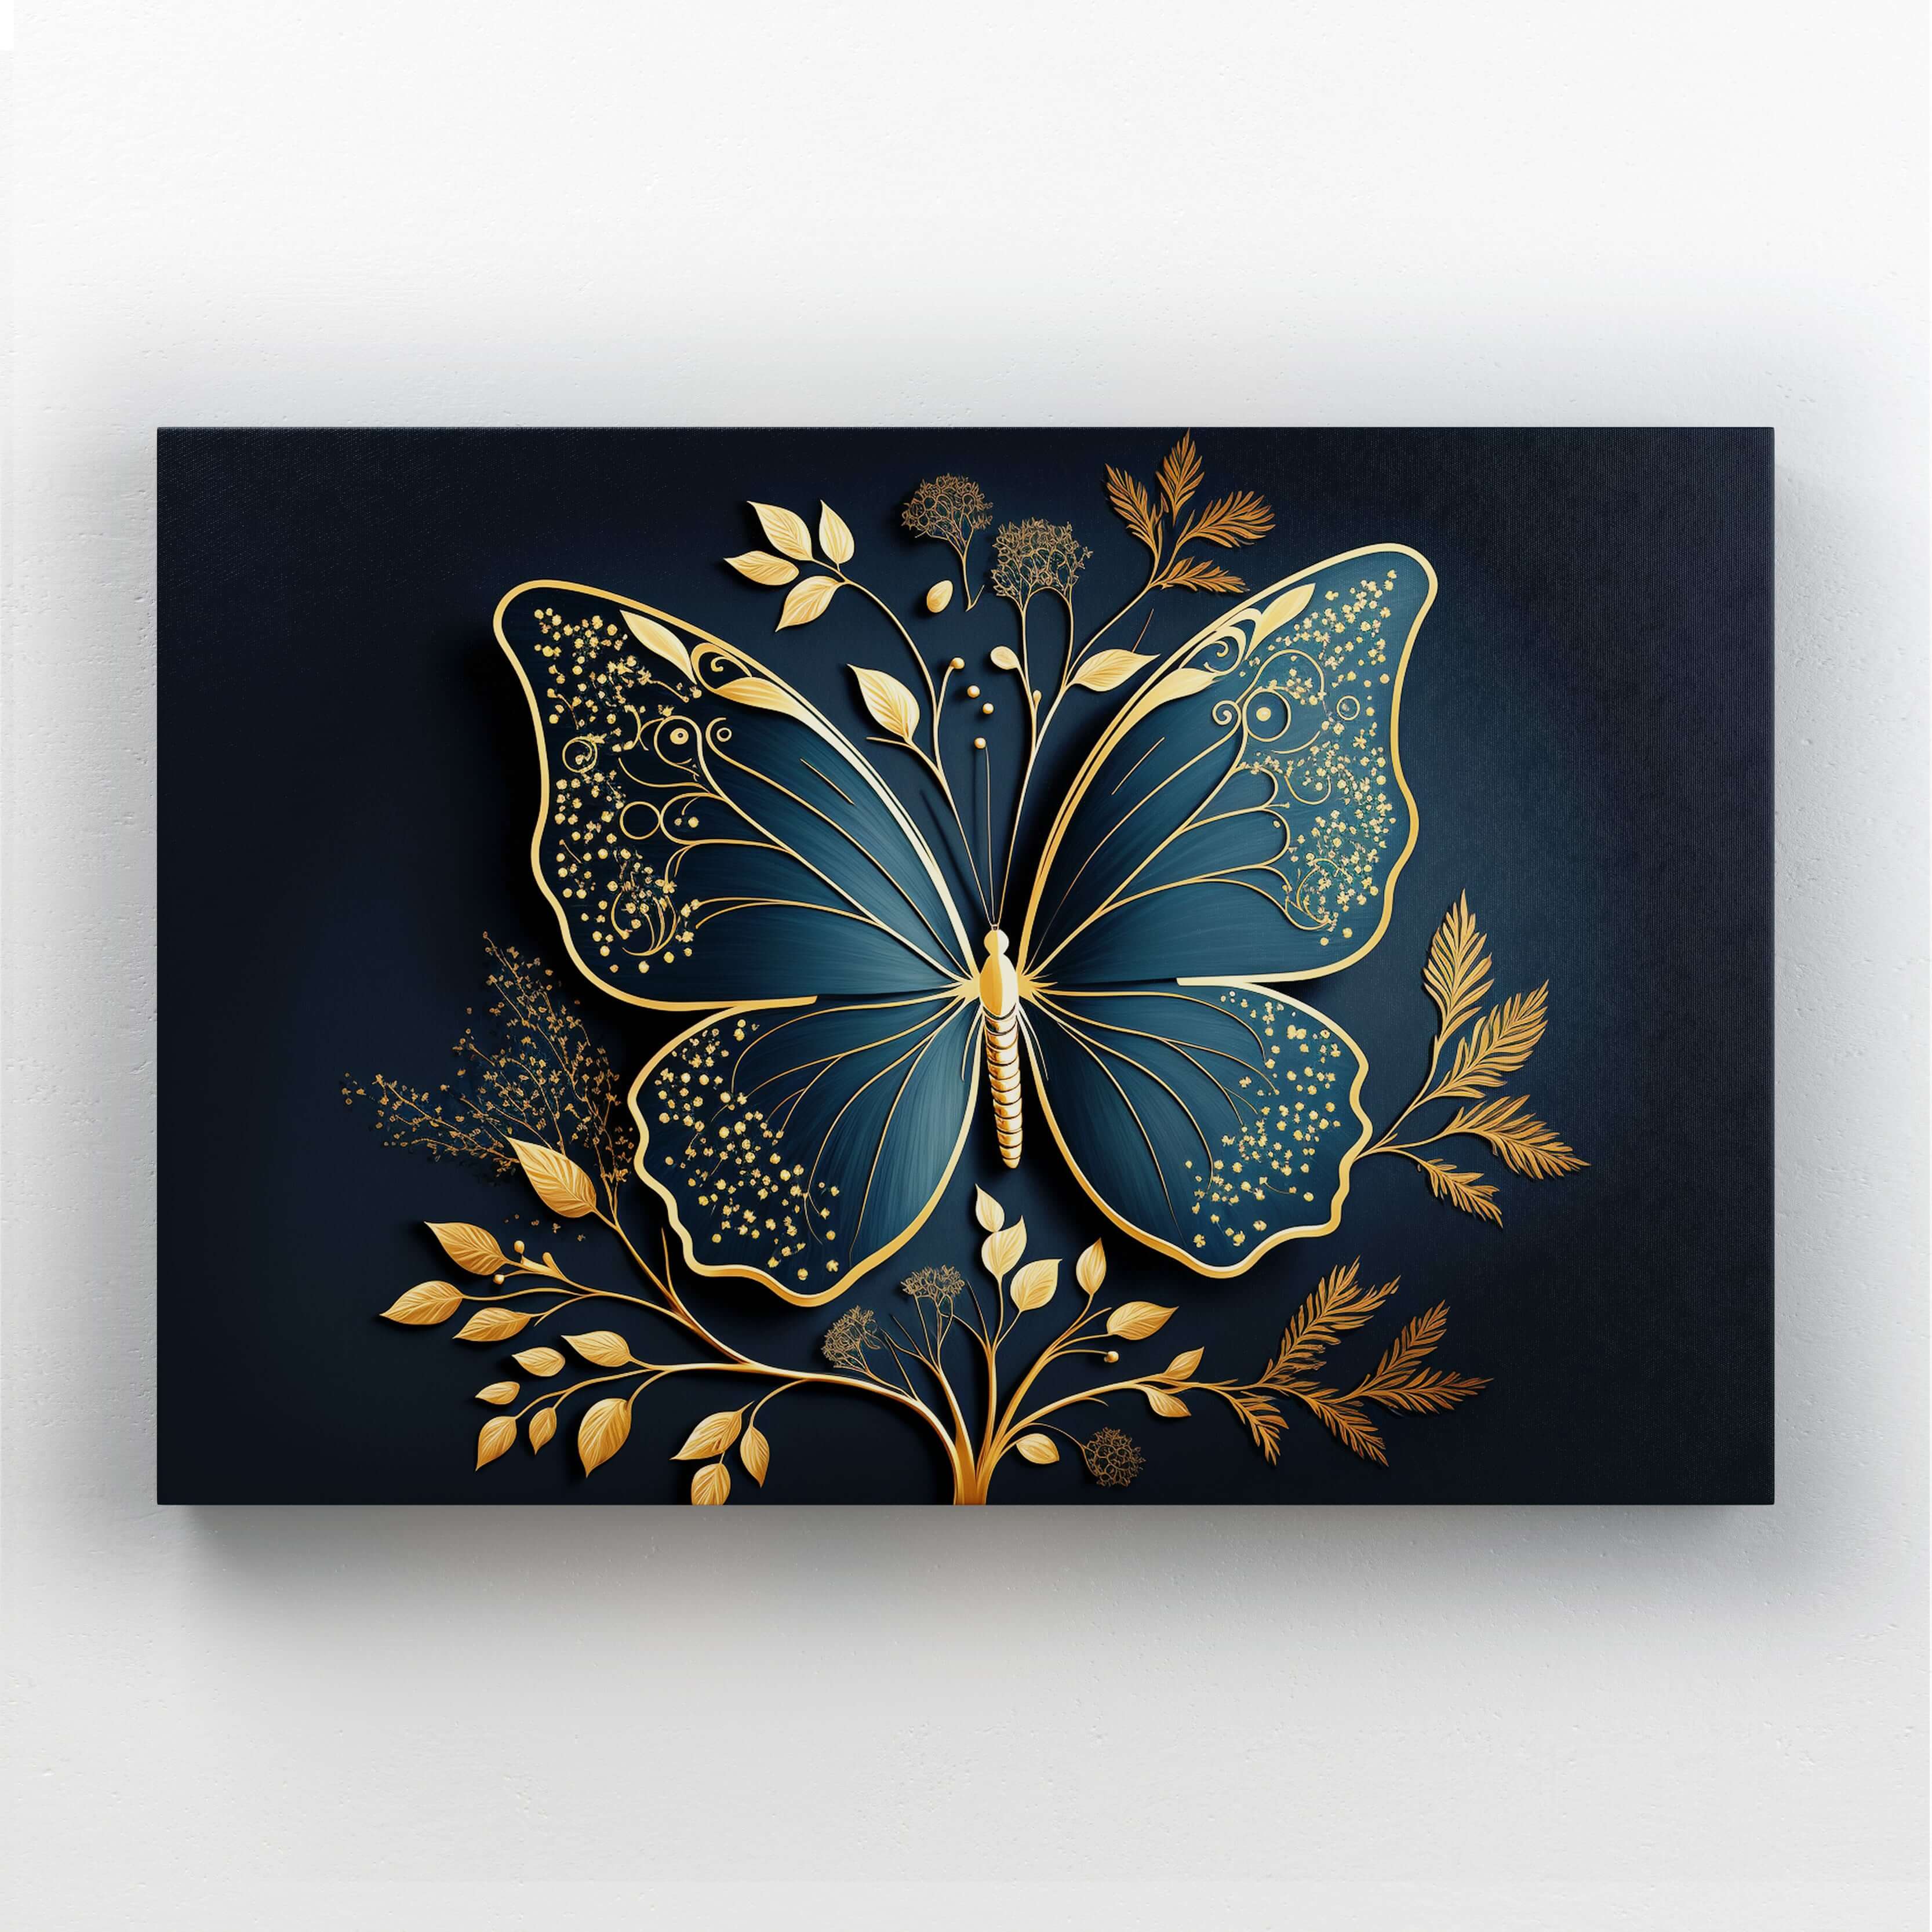 3D Gold Wall Butterfly MusaArtGallery™ | Art